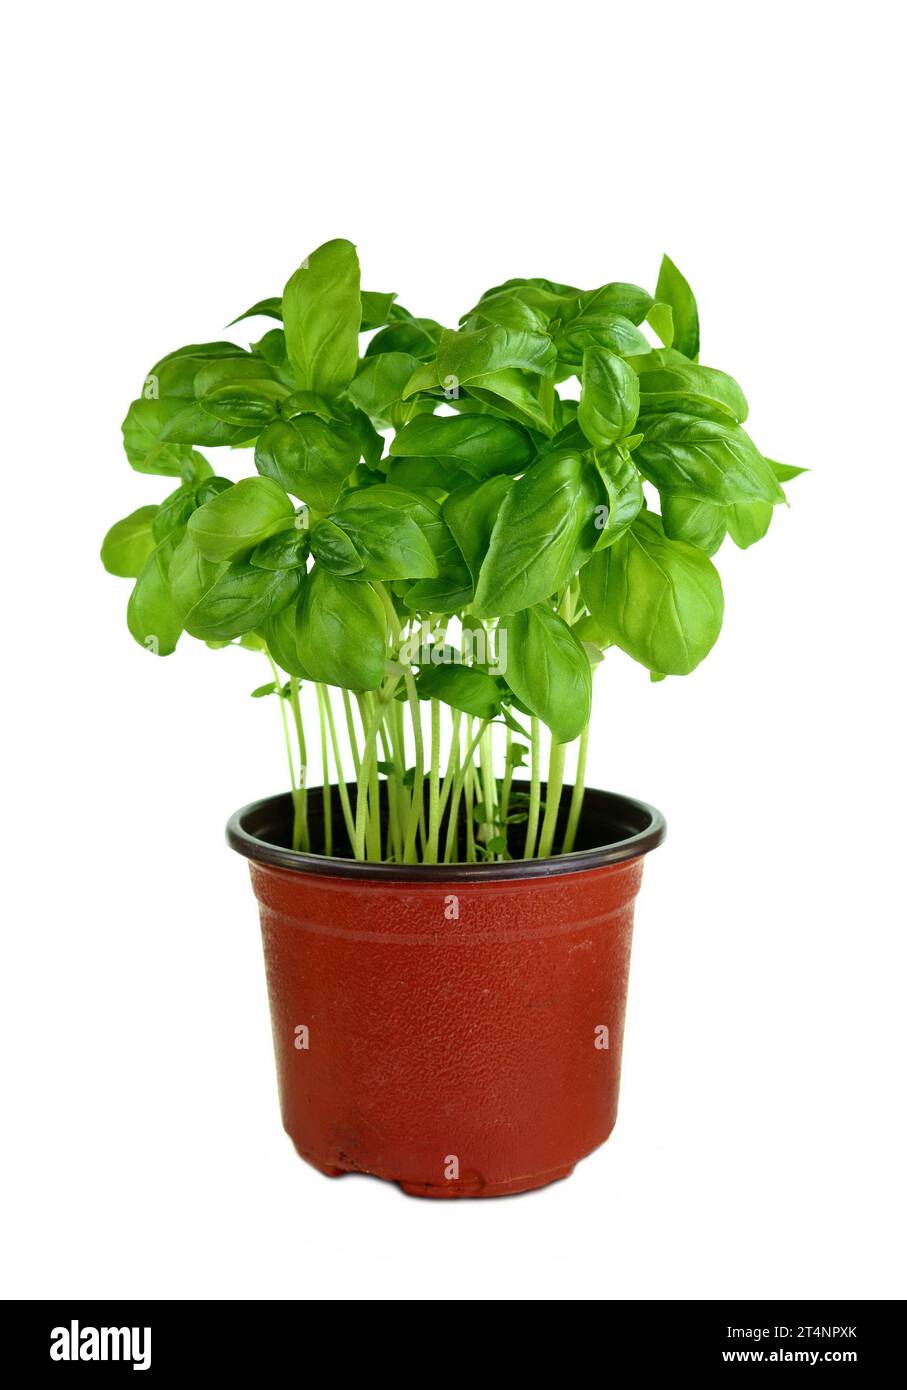 Pot de plante de basilic frais sur fond blanc. Plante de basilic sur fond blanc. Basilic dans une casserole. Banque D'Images